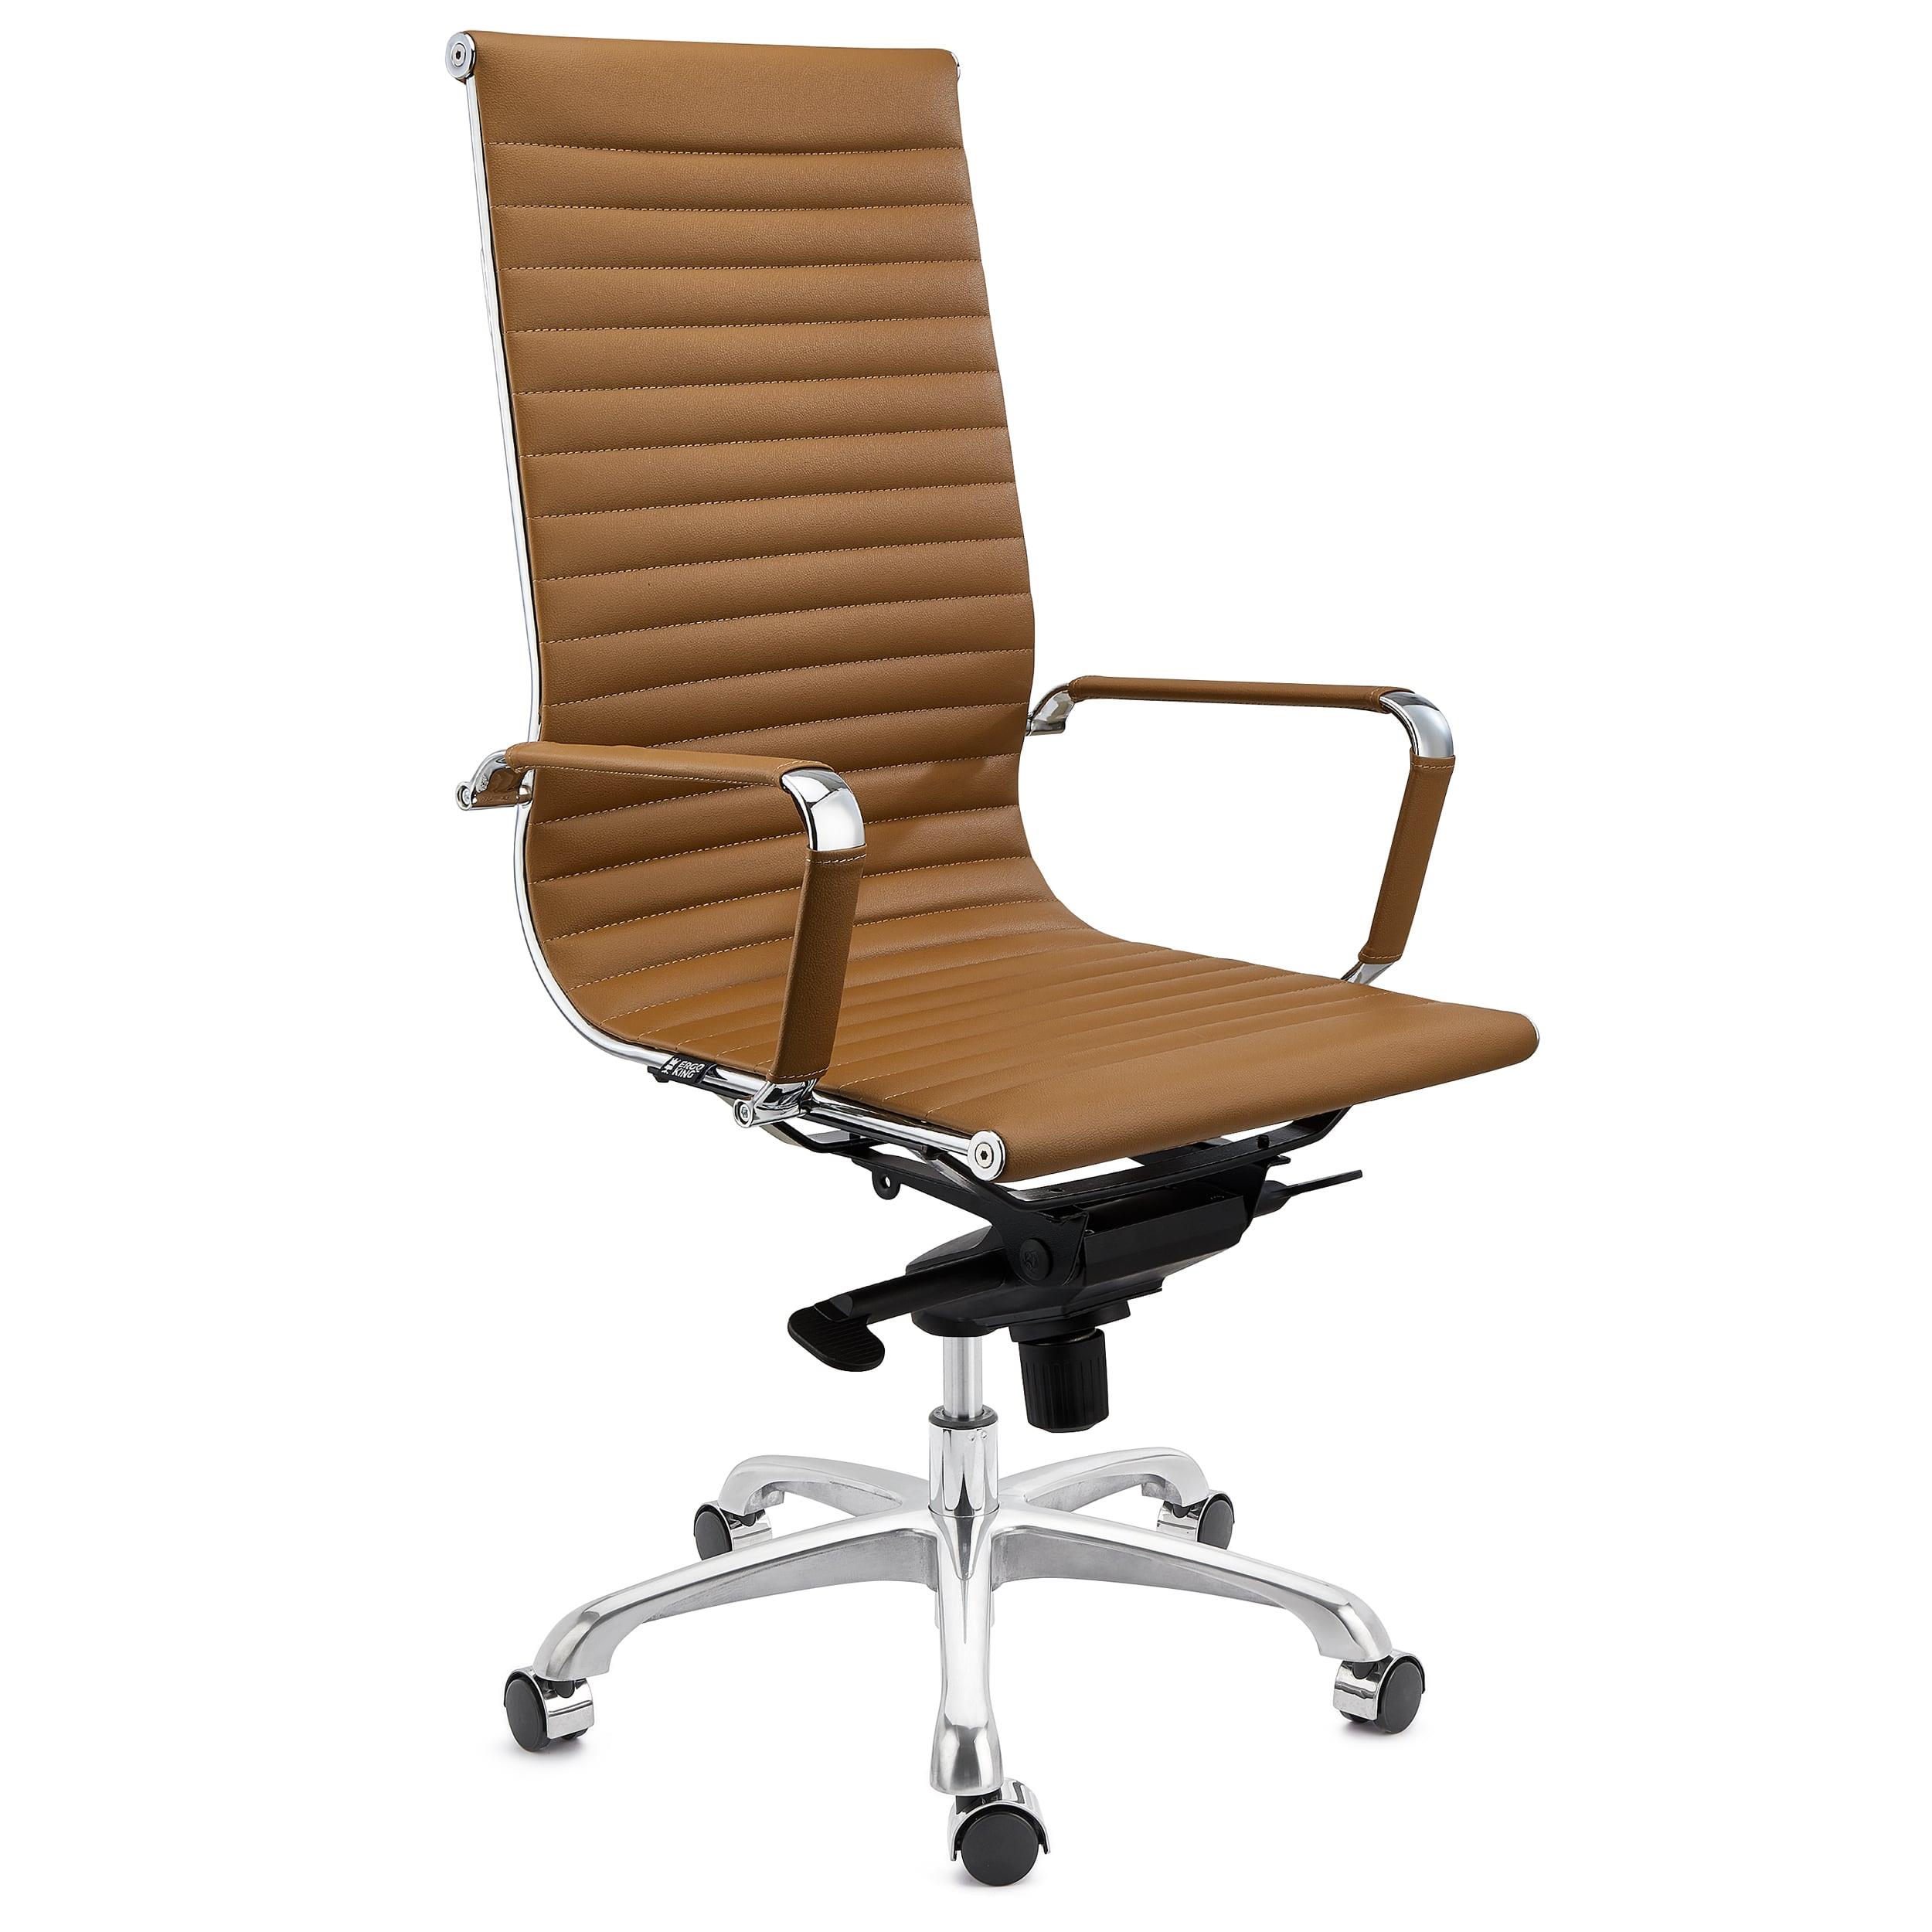 Chaise de Bureau DORIS, structure Métallique Chromée, Finitons élégantes, cuir, Marron